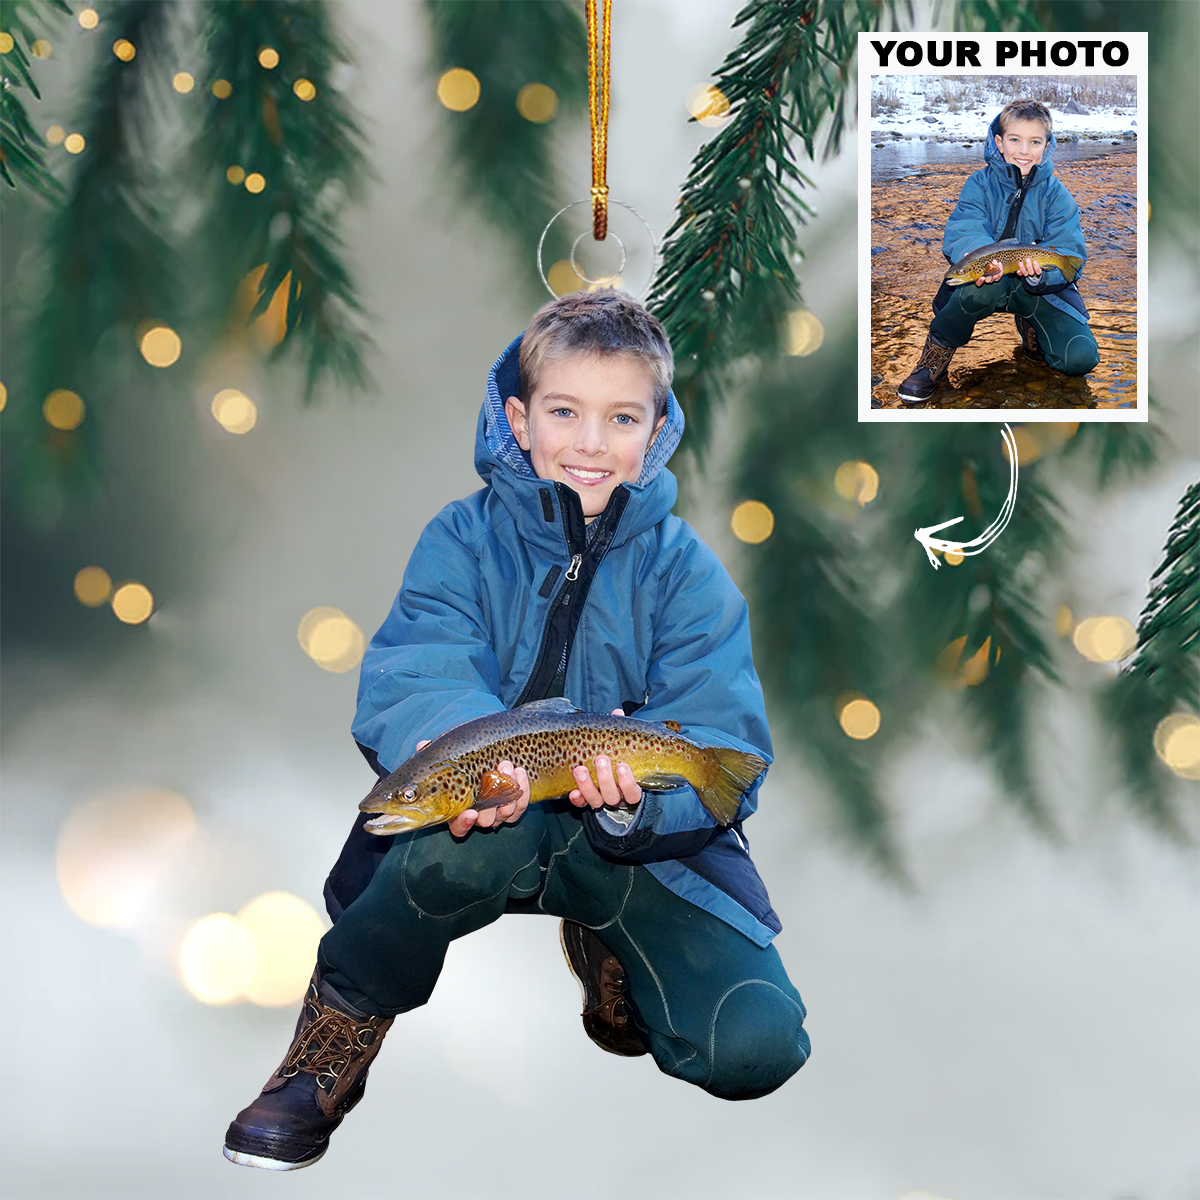 Custom Photo Kid Fishing Ornament Gift For Gift For Fishing Lovers, Family Members, Kids